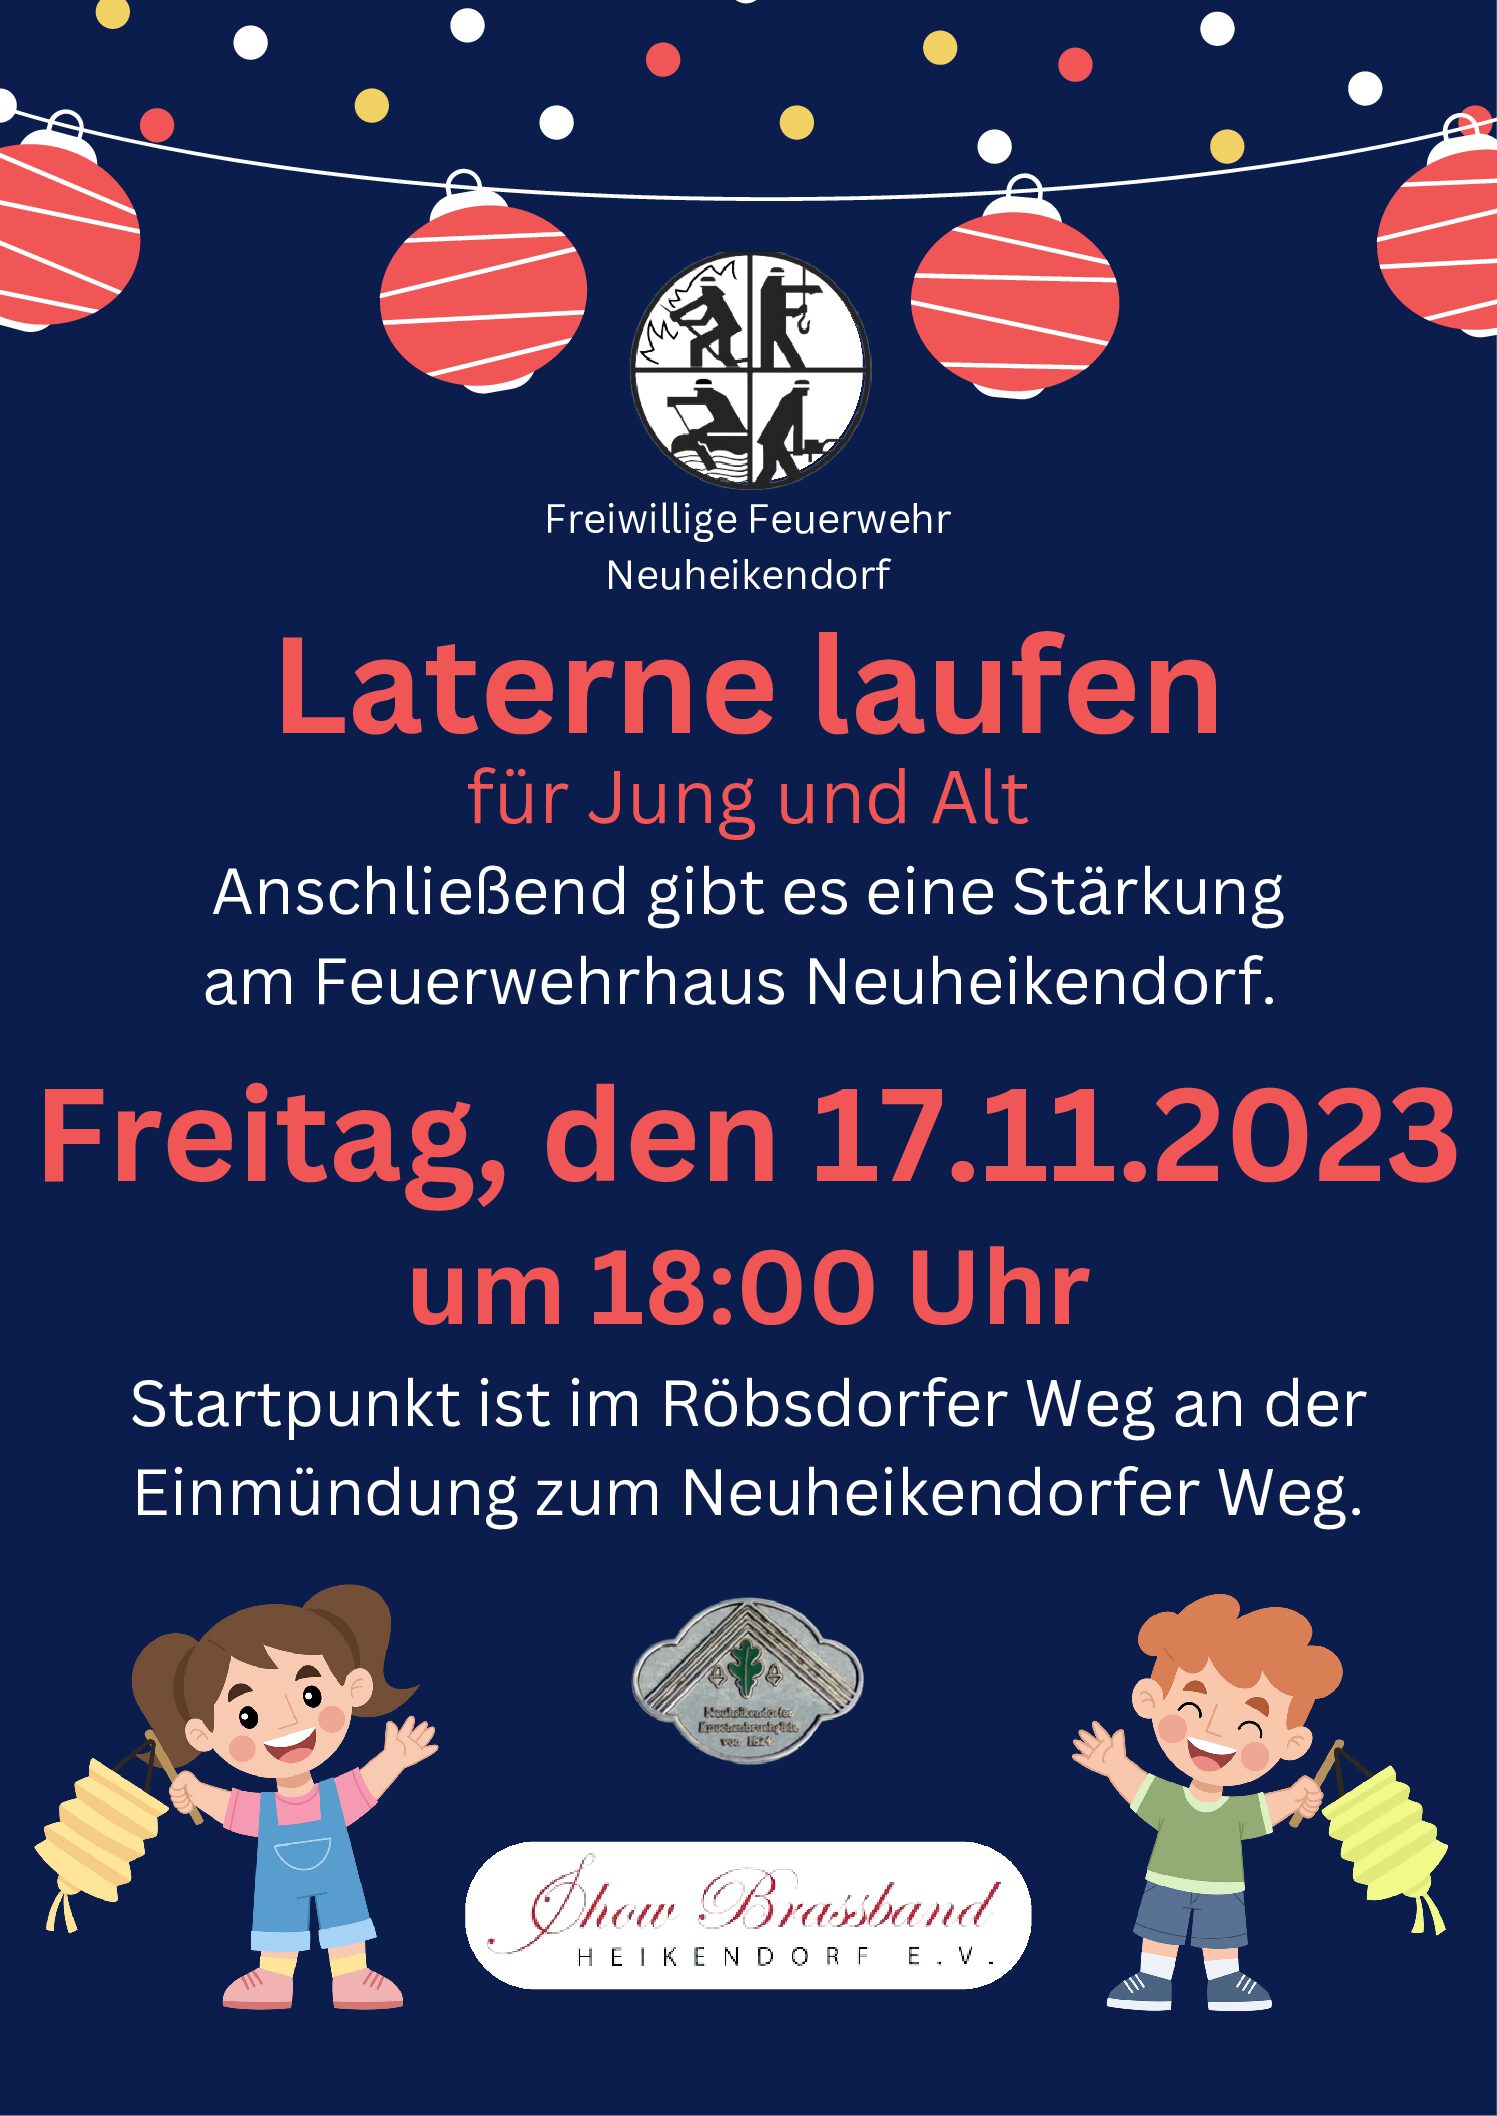 News #2023/8: Laterne laufen in Neuheikendorf